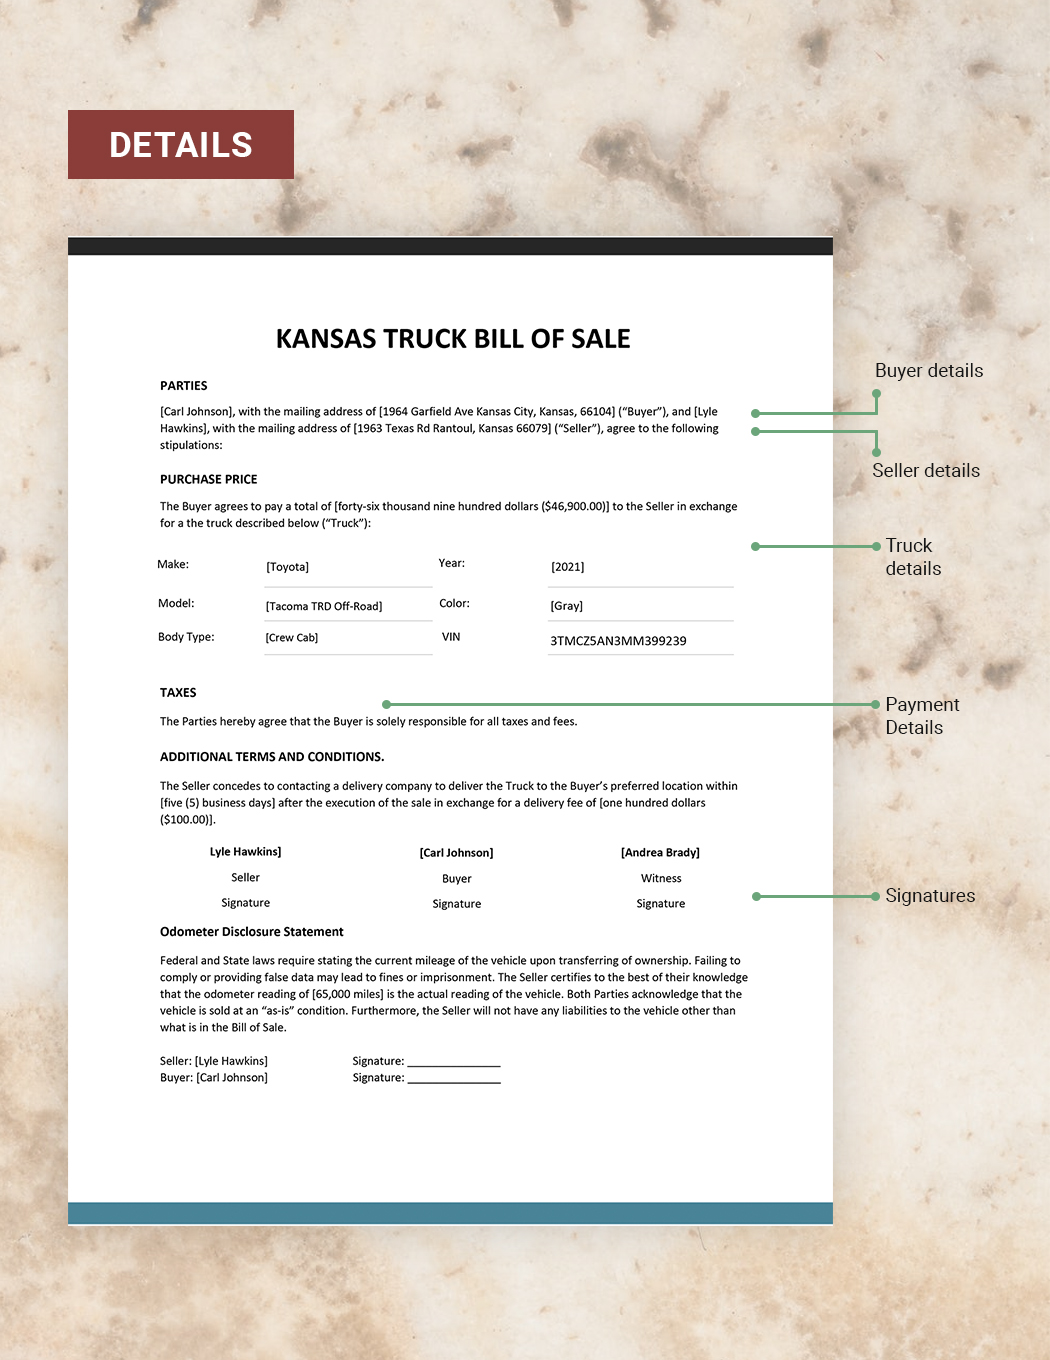 Kansas Truck Bill of Sale Template